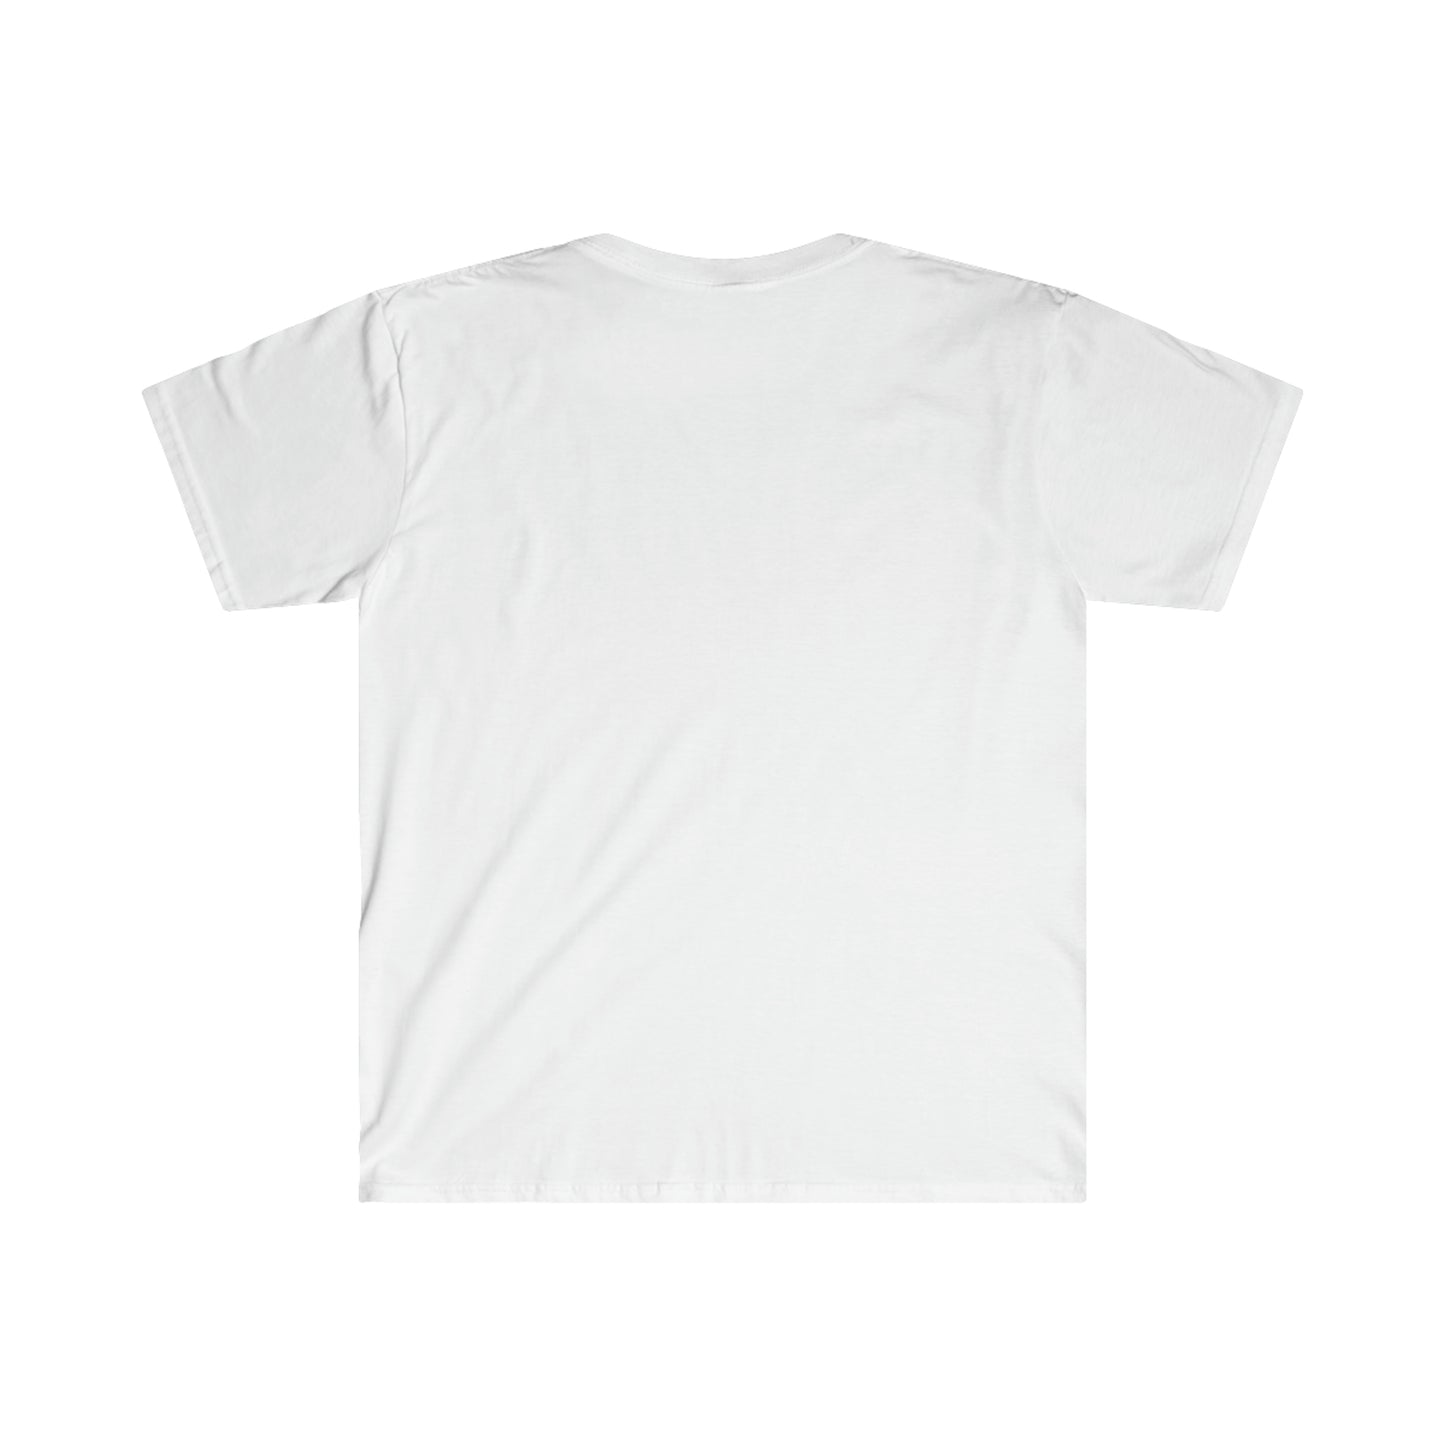 Korean Drama - Unisex Softstyle T-Shirt